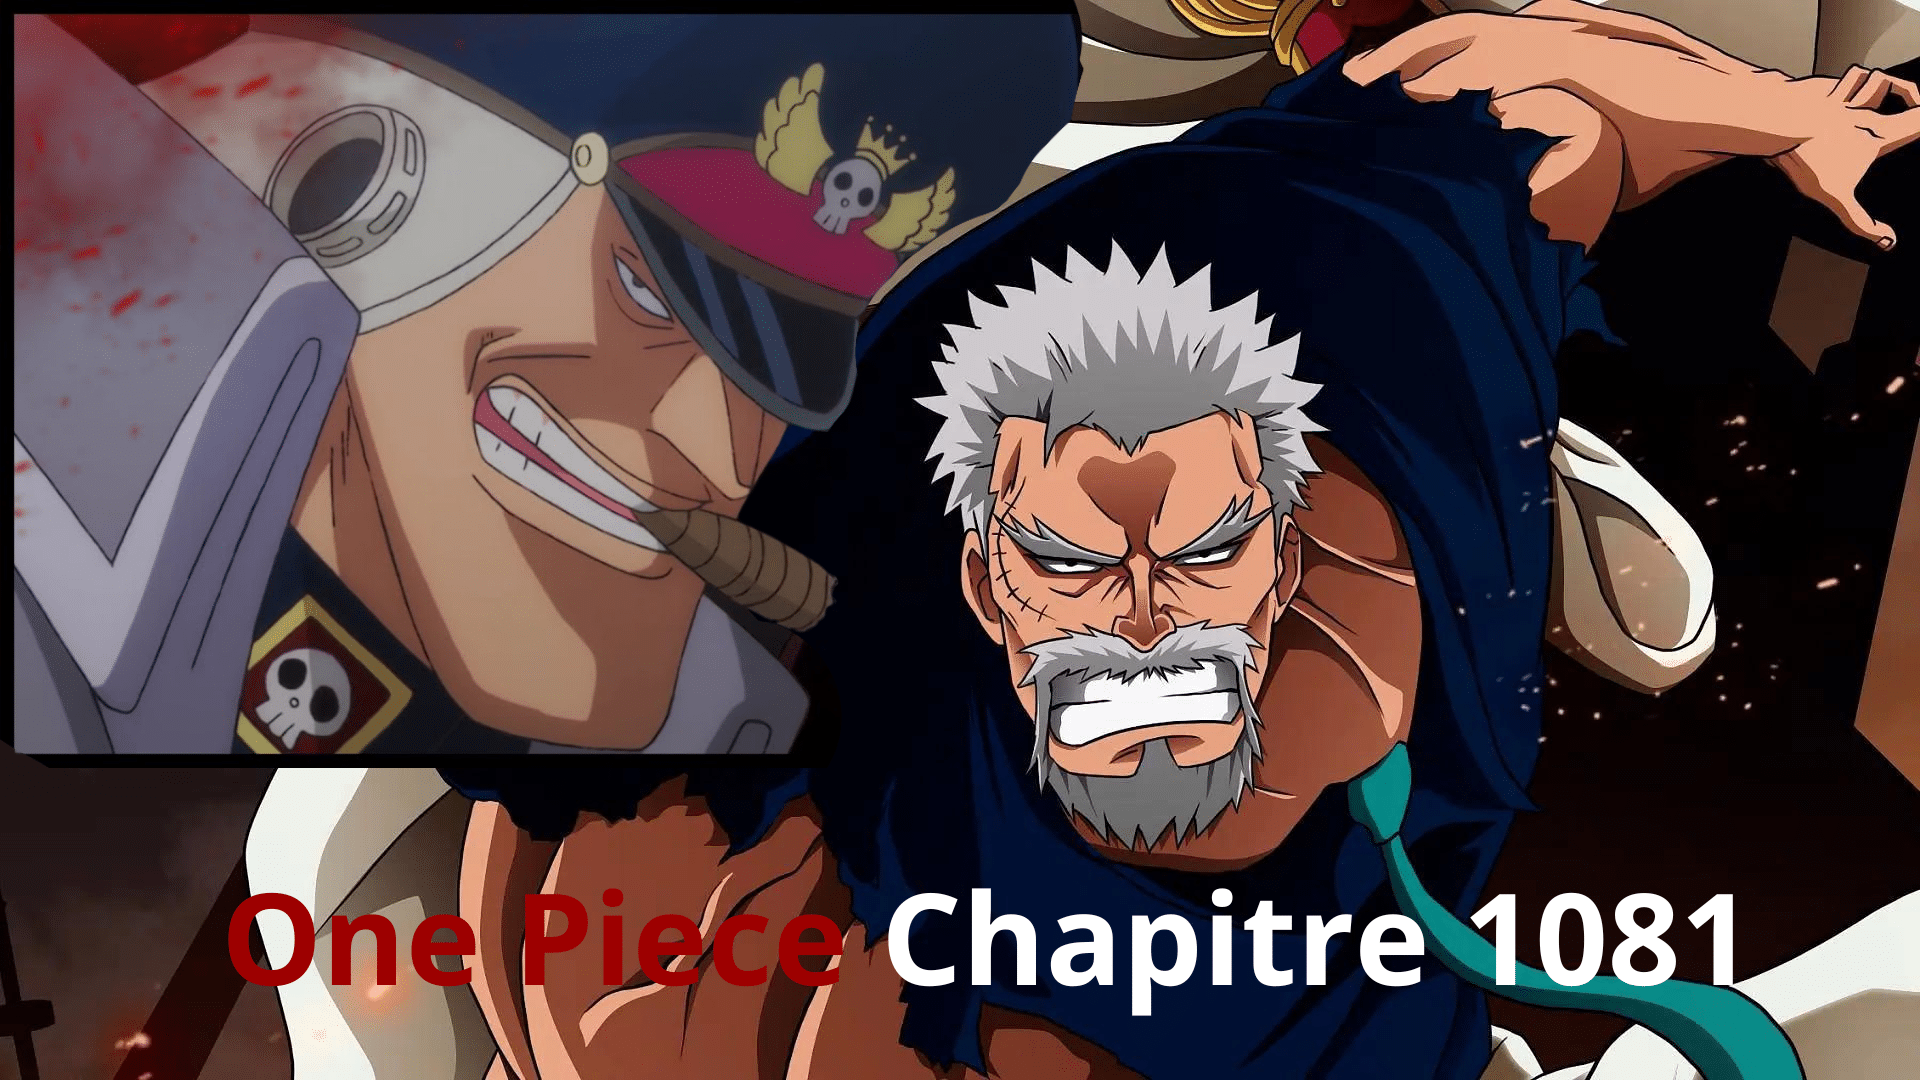 Chapitre 1081 One Piece